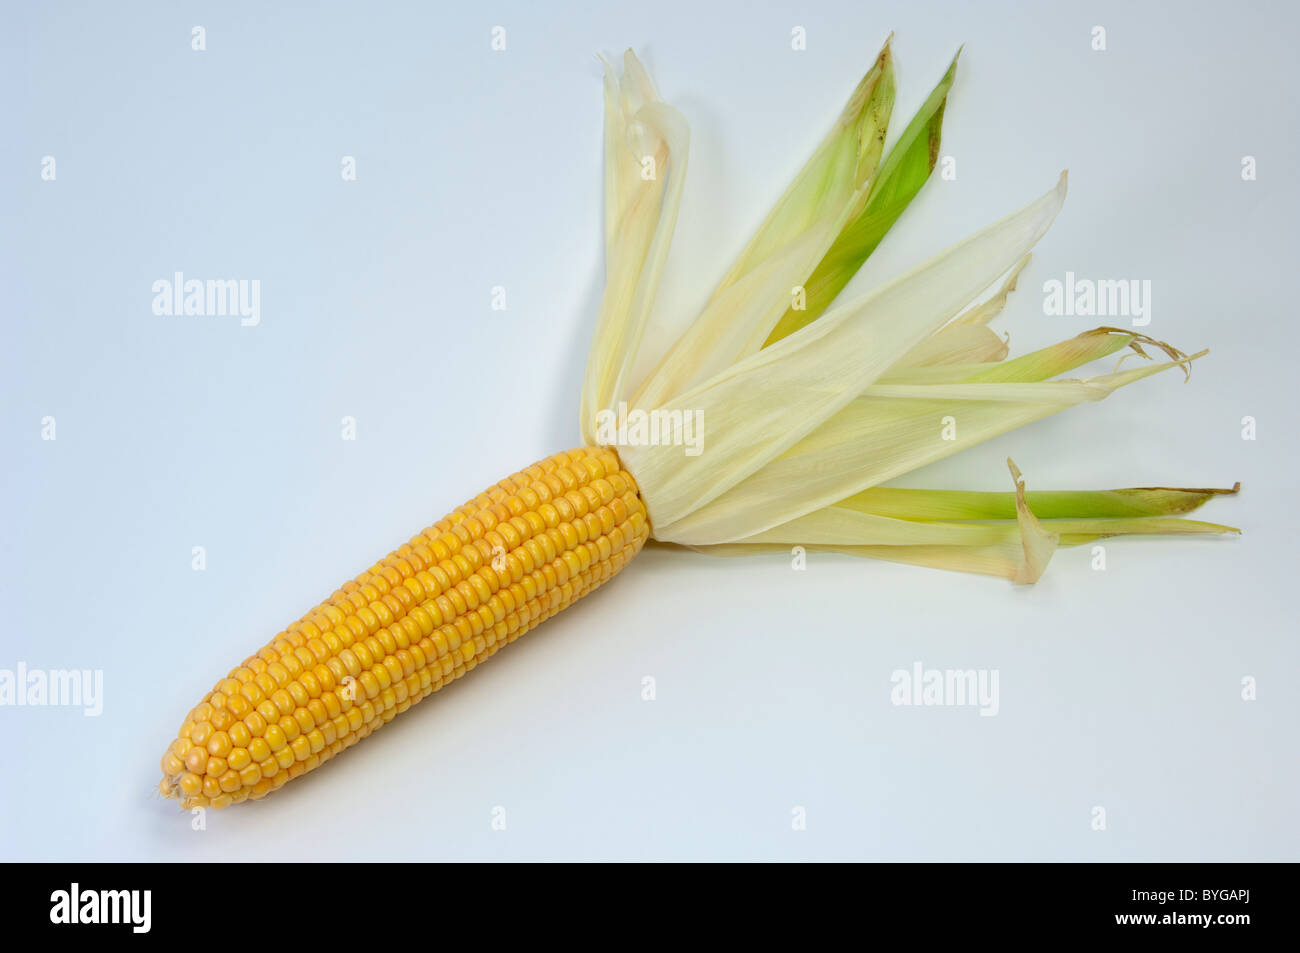 Maize, Corn (Zea mays). Ripe corncob. Studio picture against a white background. Stock Photo